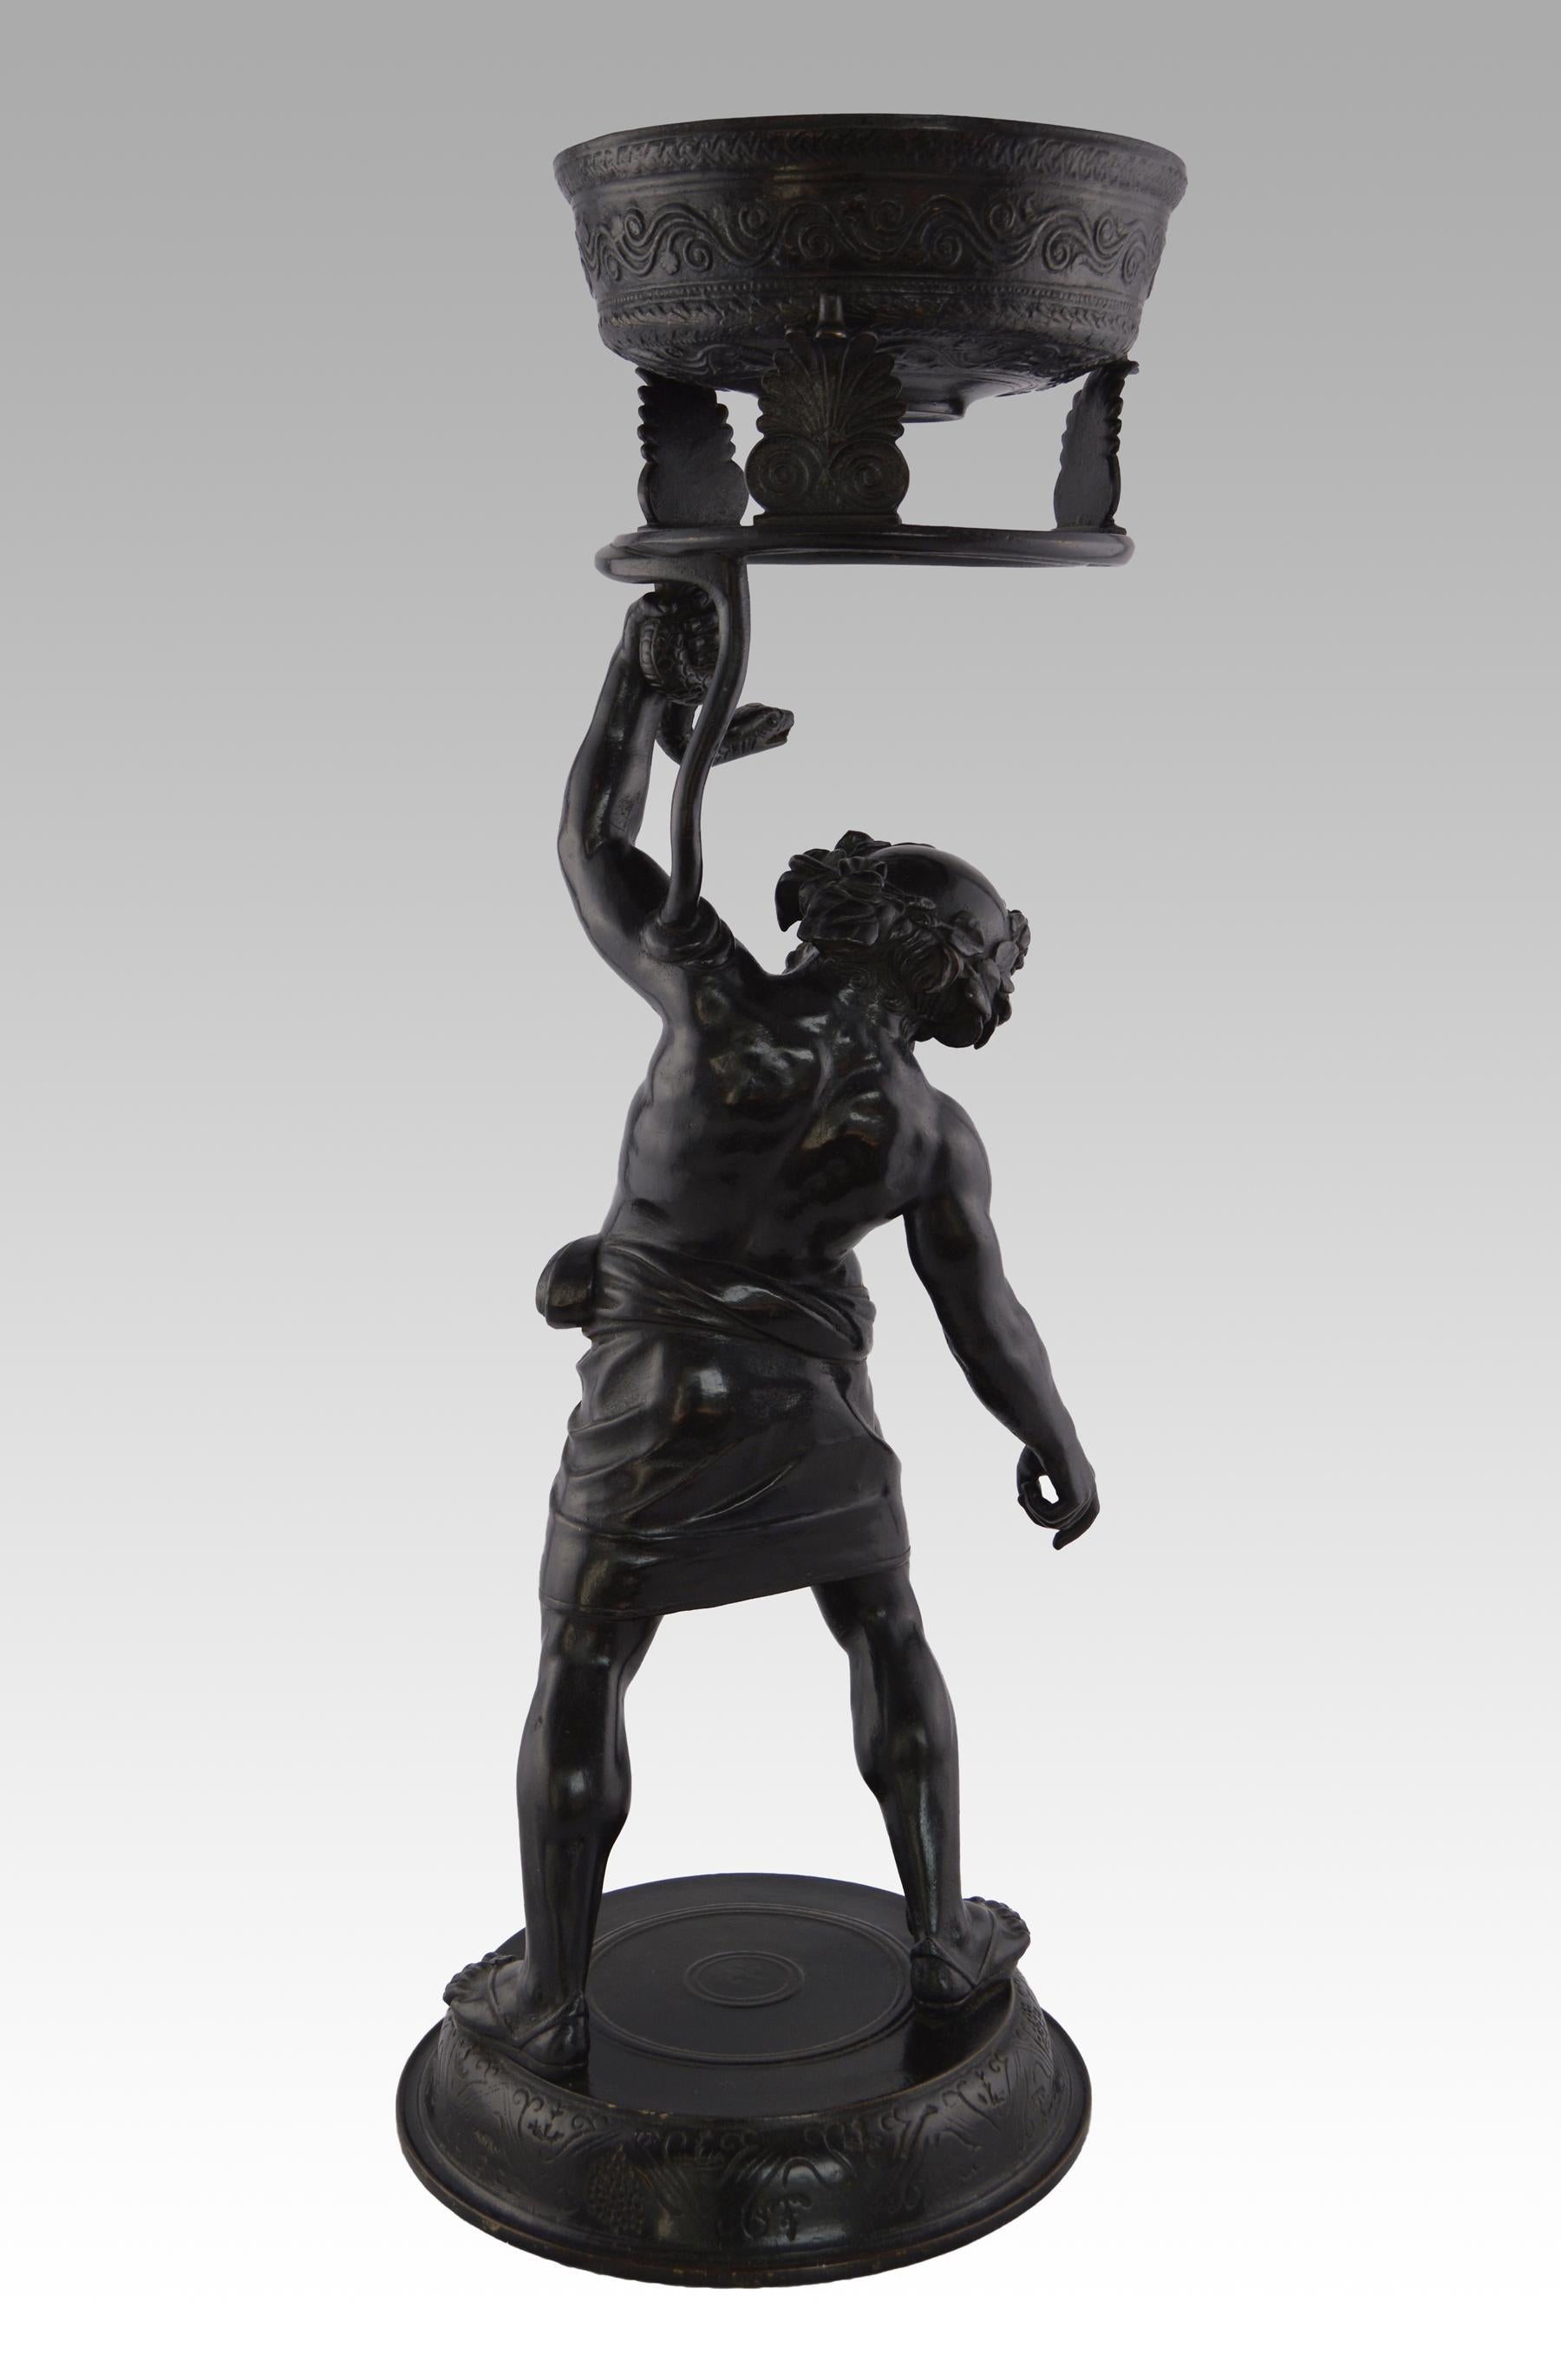 Grand Tour Bronze
Italien, (19ème siècle)
Silenus luttant contre un serpent
Bronze, estampillé de la marque de fonderie de Sommer de Naples, C1880
Hauteur : 67 cm (26,25 pouces)
Largeur : 25 cm (9.75 inches)
Profondeur : 9.75 inches (25cm)

Un